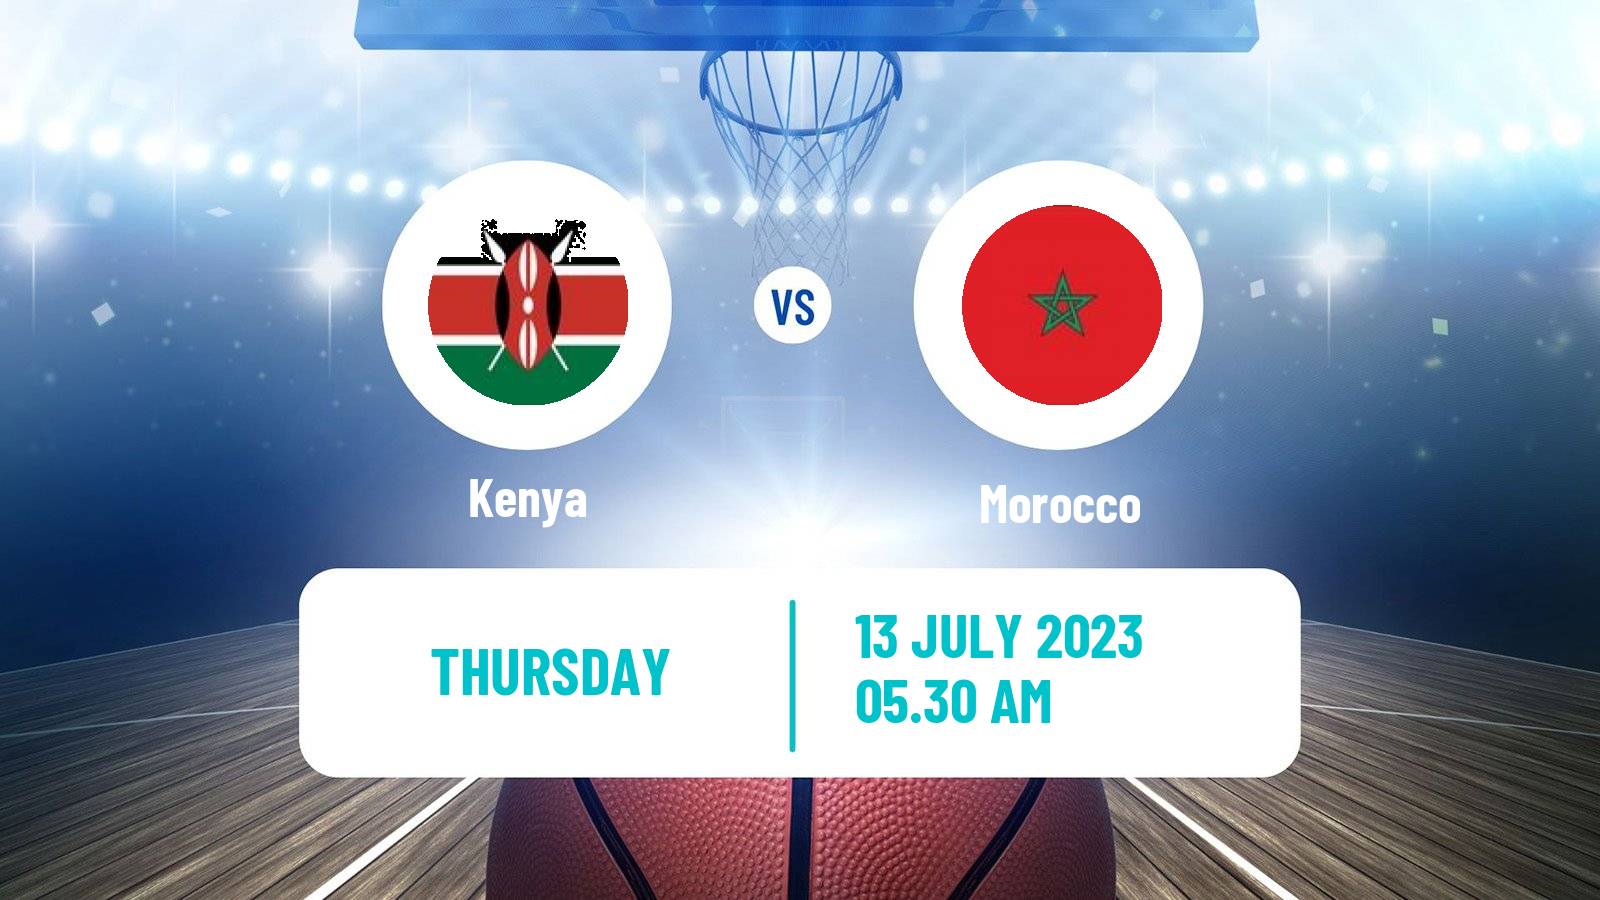 Basketball AfroCan Basketball Kenya - Morocco